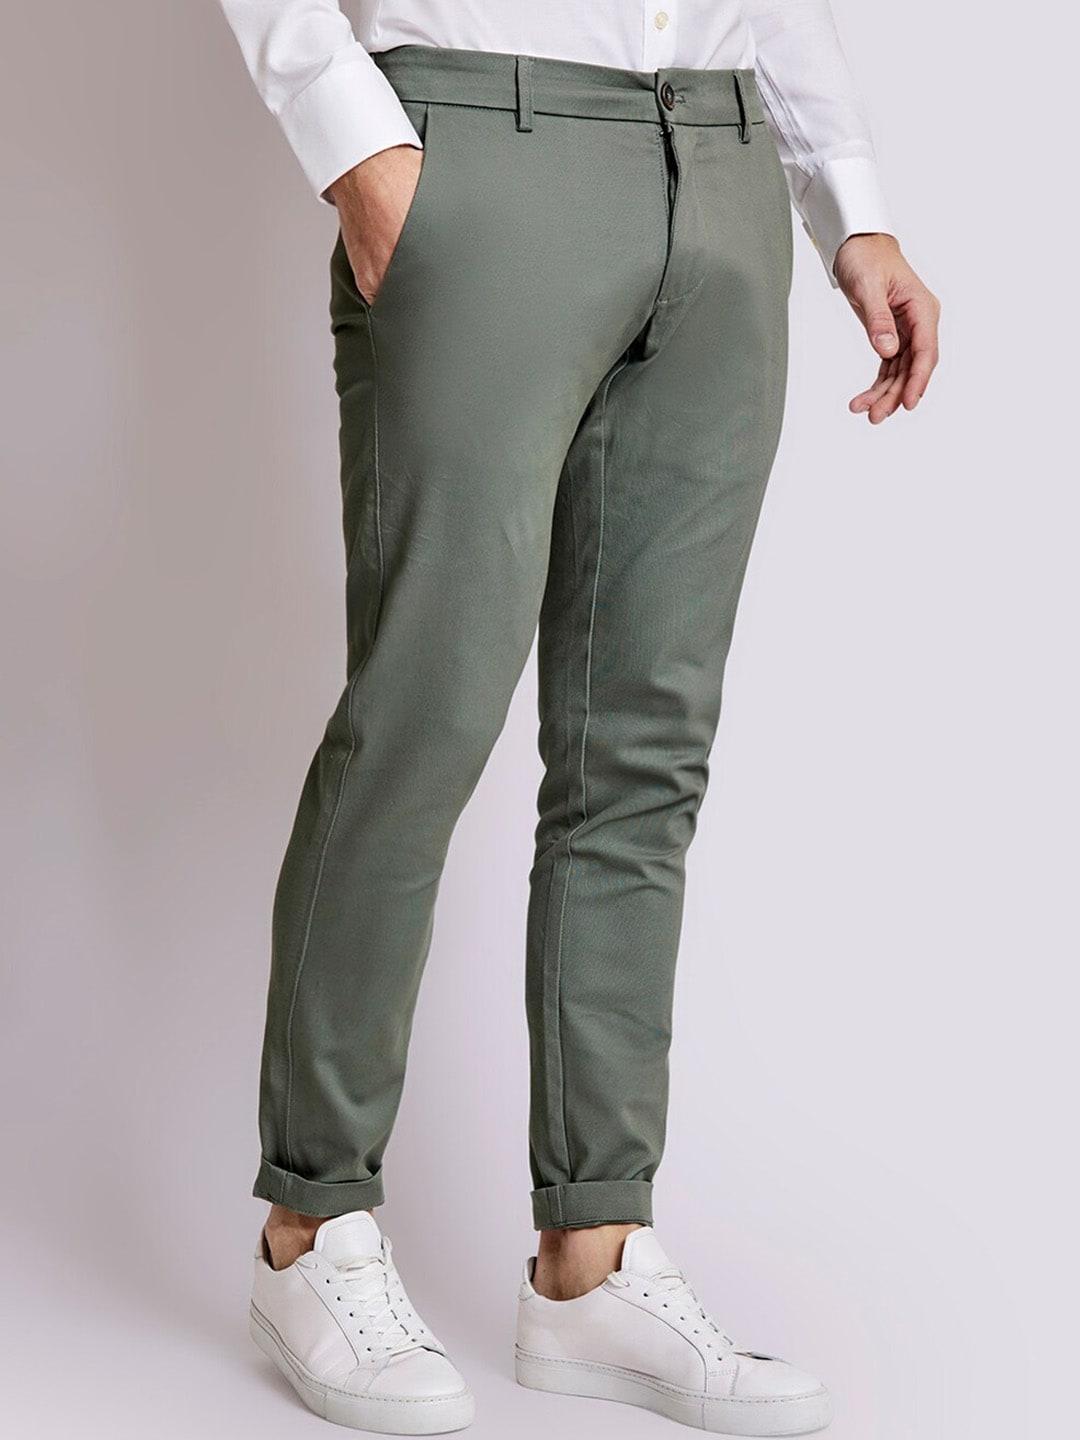 bruun-&-stengade-men-slim-fit-chinos-trousers